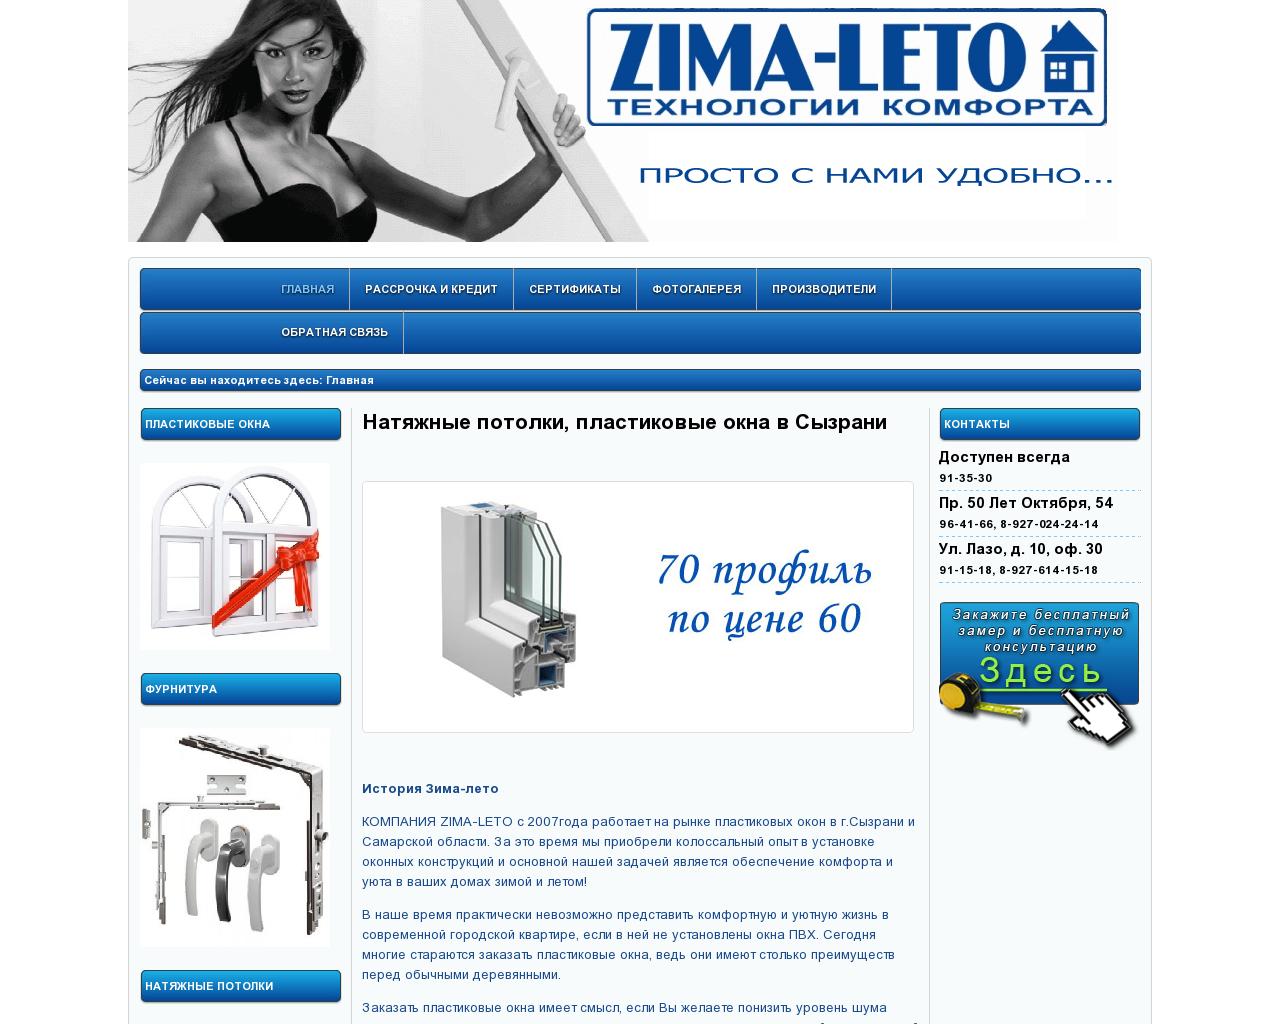 Изображение сайта zima-leto.su в разрешении 1280x1024